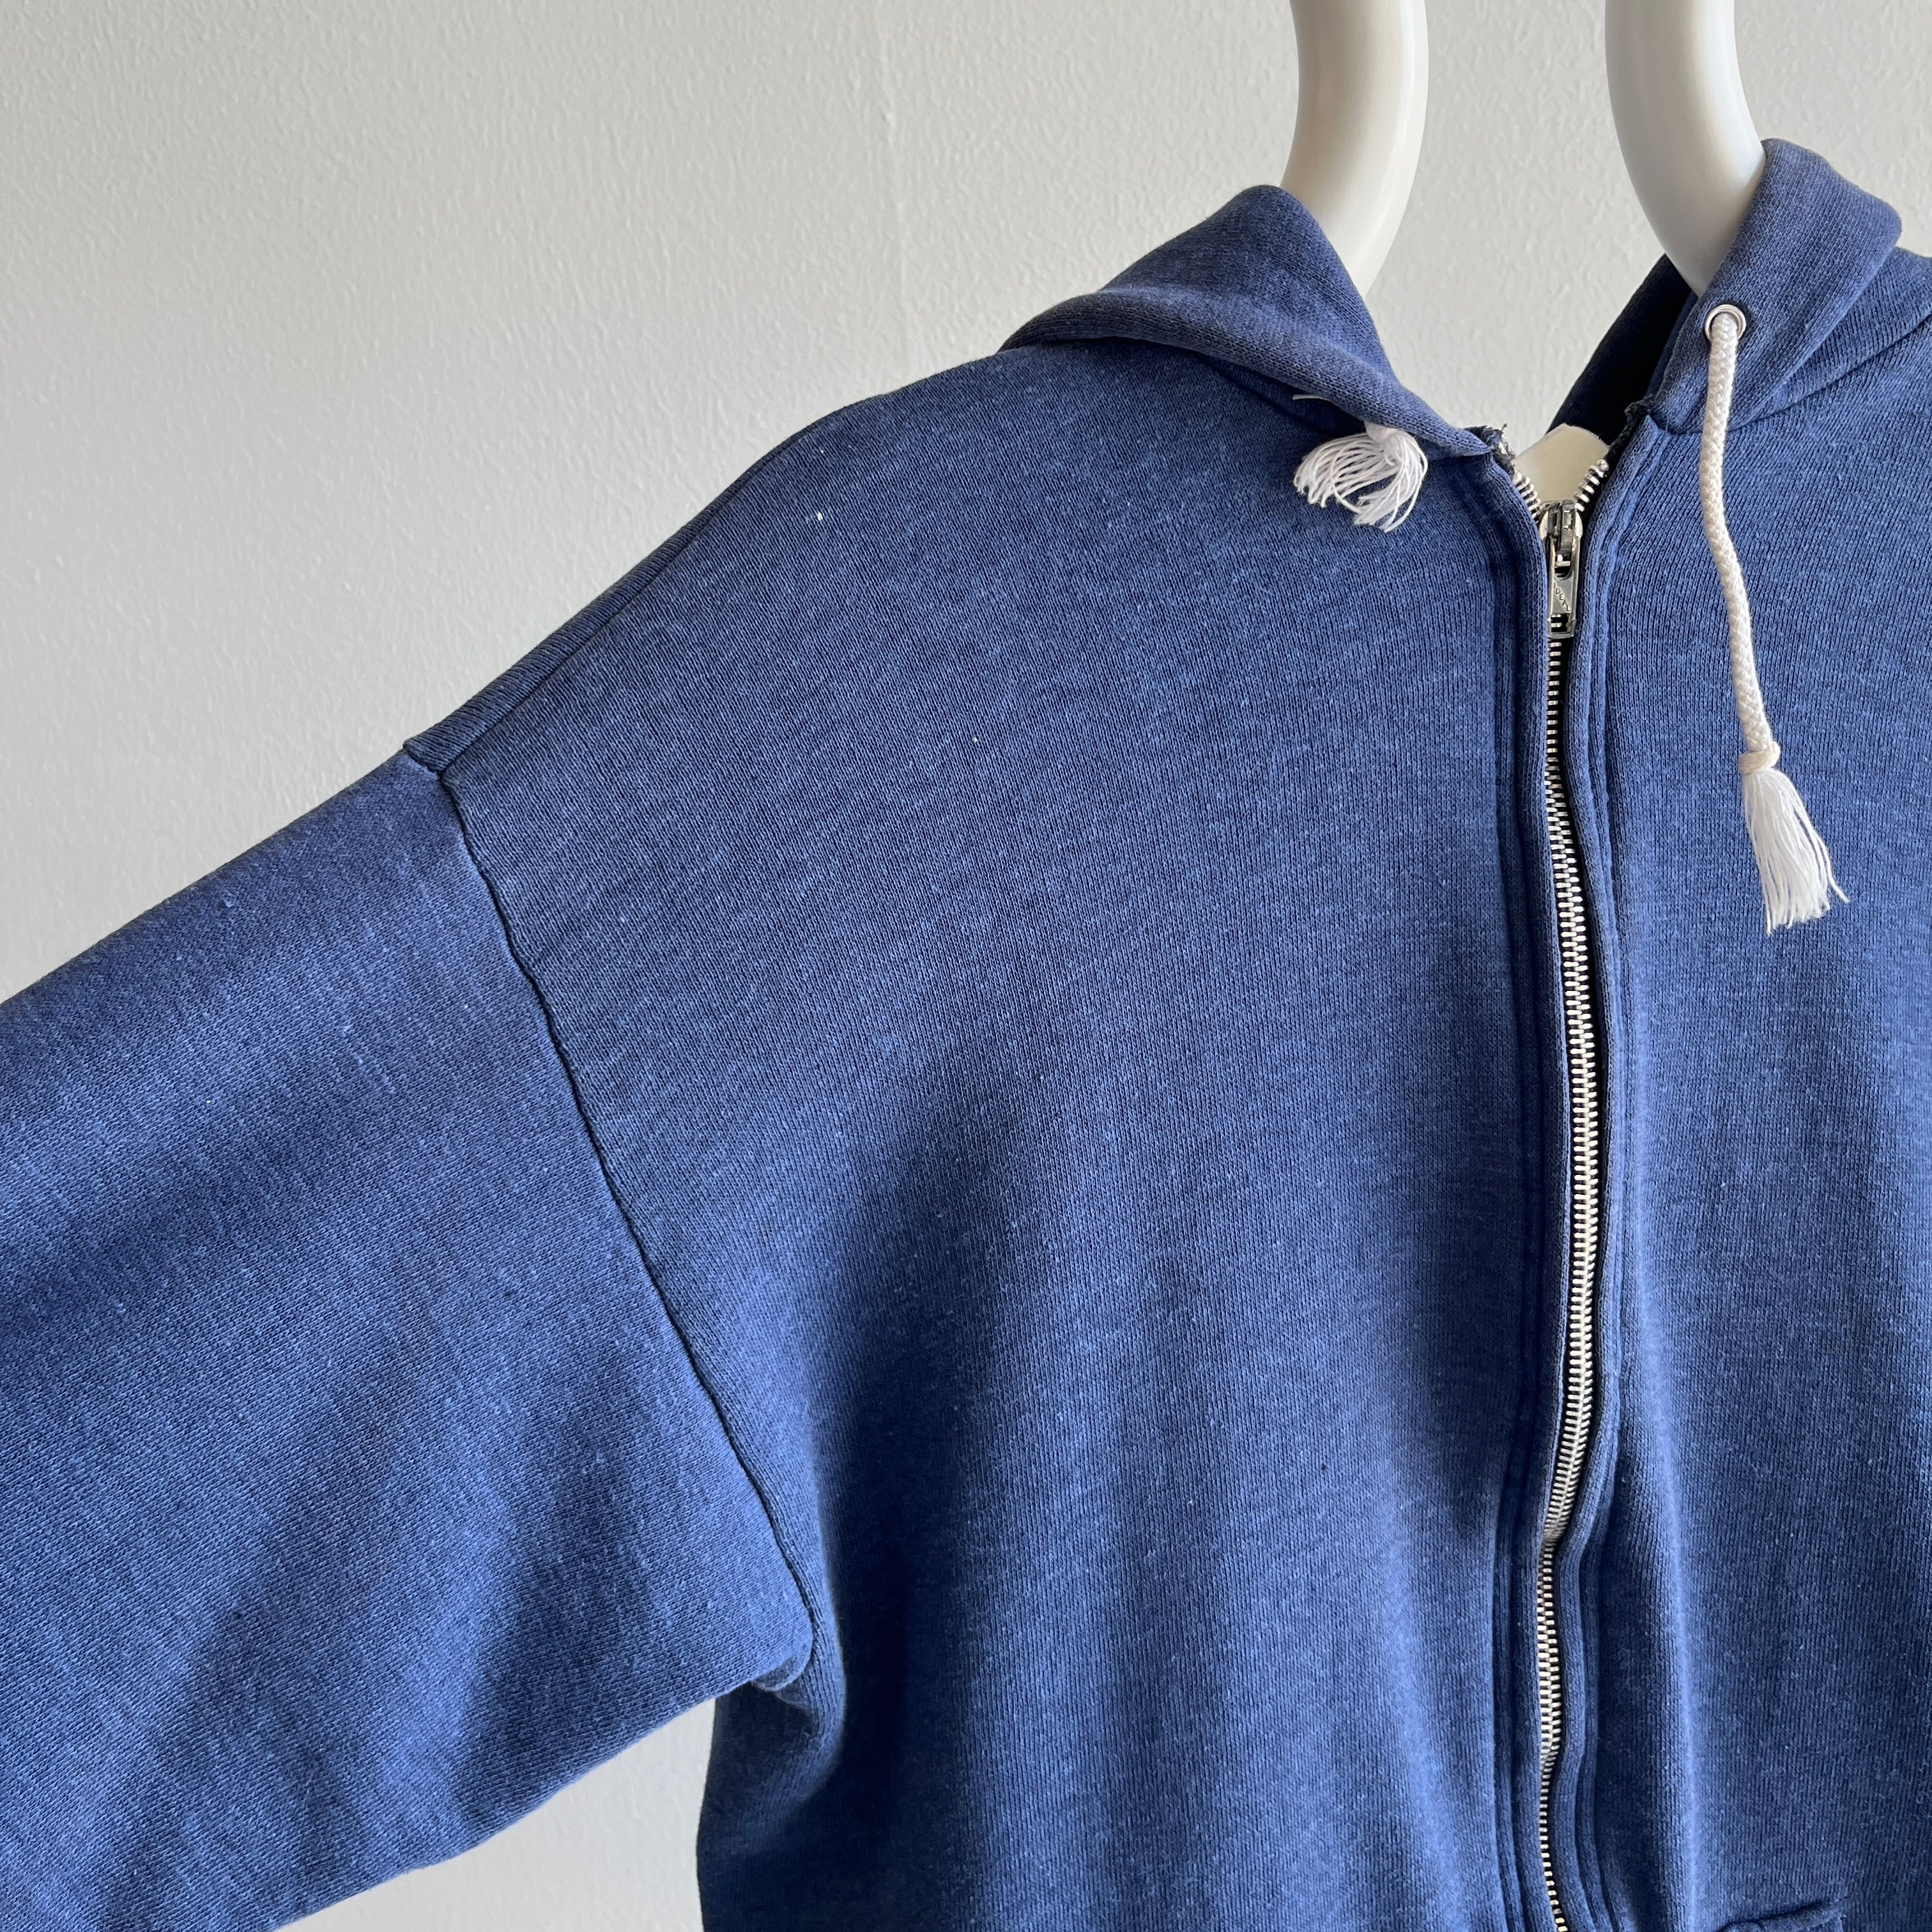 1980s Selvedge Pouch Healthknit Navy Zip Up Sweatshirt - YES